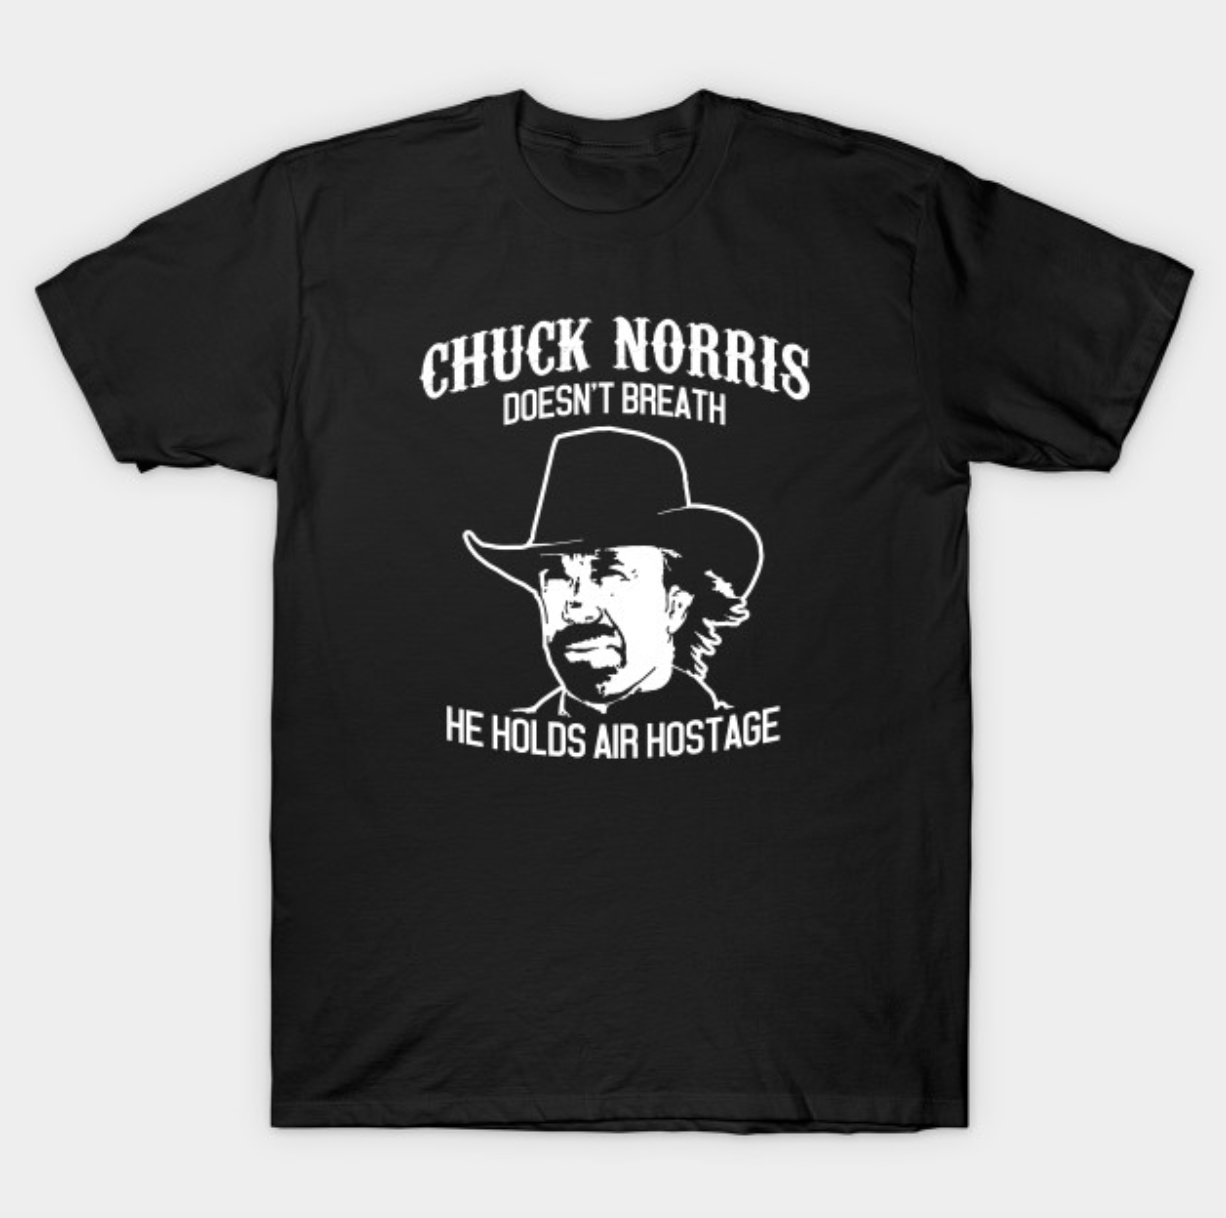 cluck norris shirt